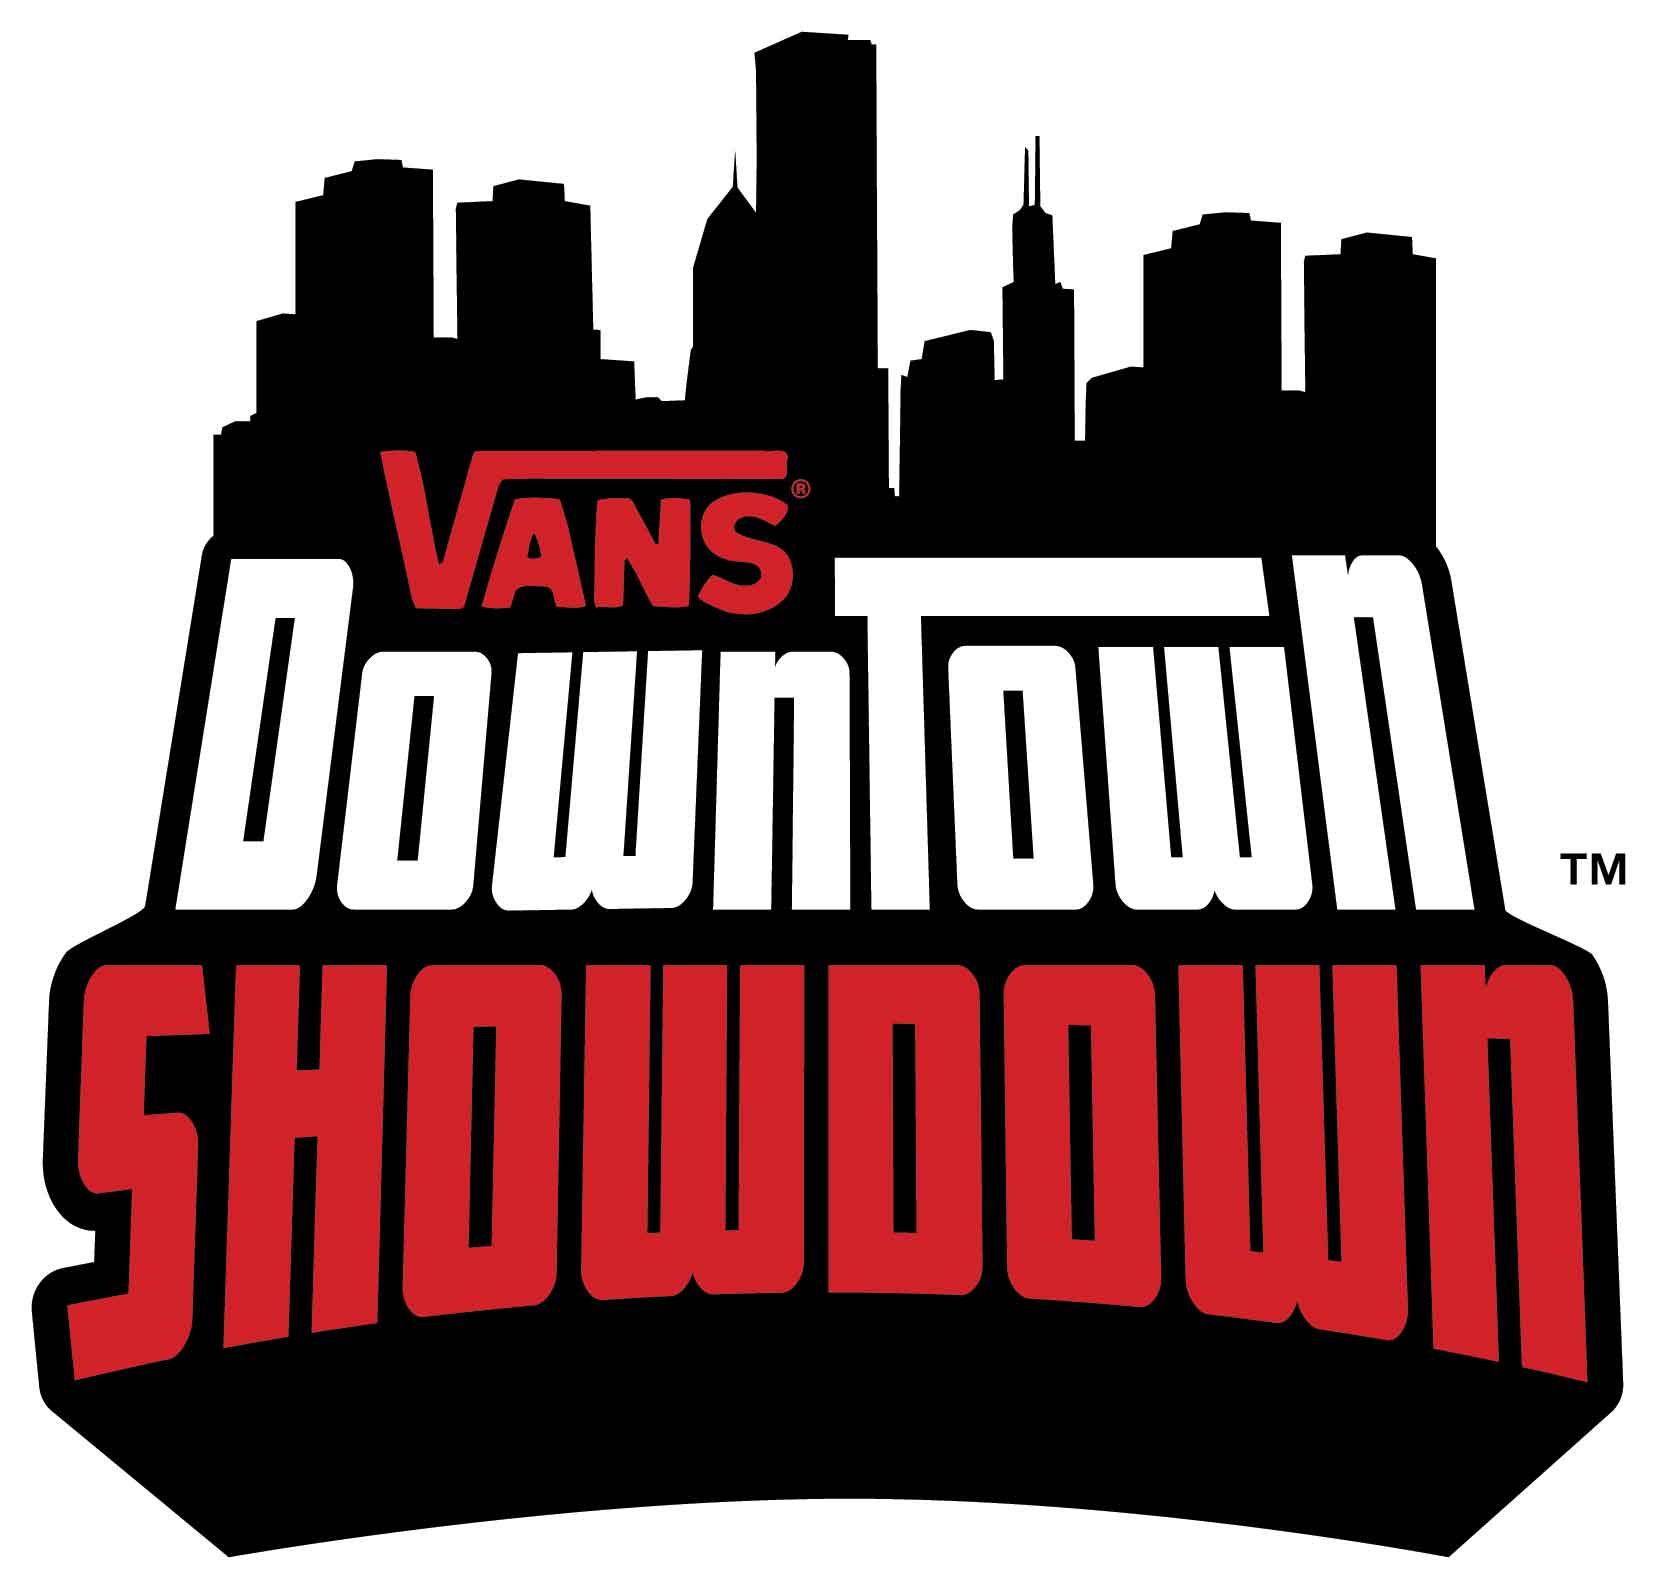 Vans Skateboard Logo - 2008 Vans Downtown Showdown | TransWorld SKATEboarding